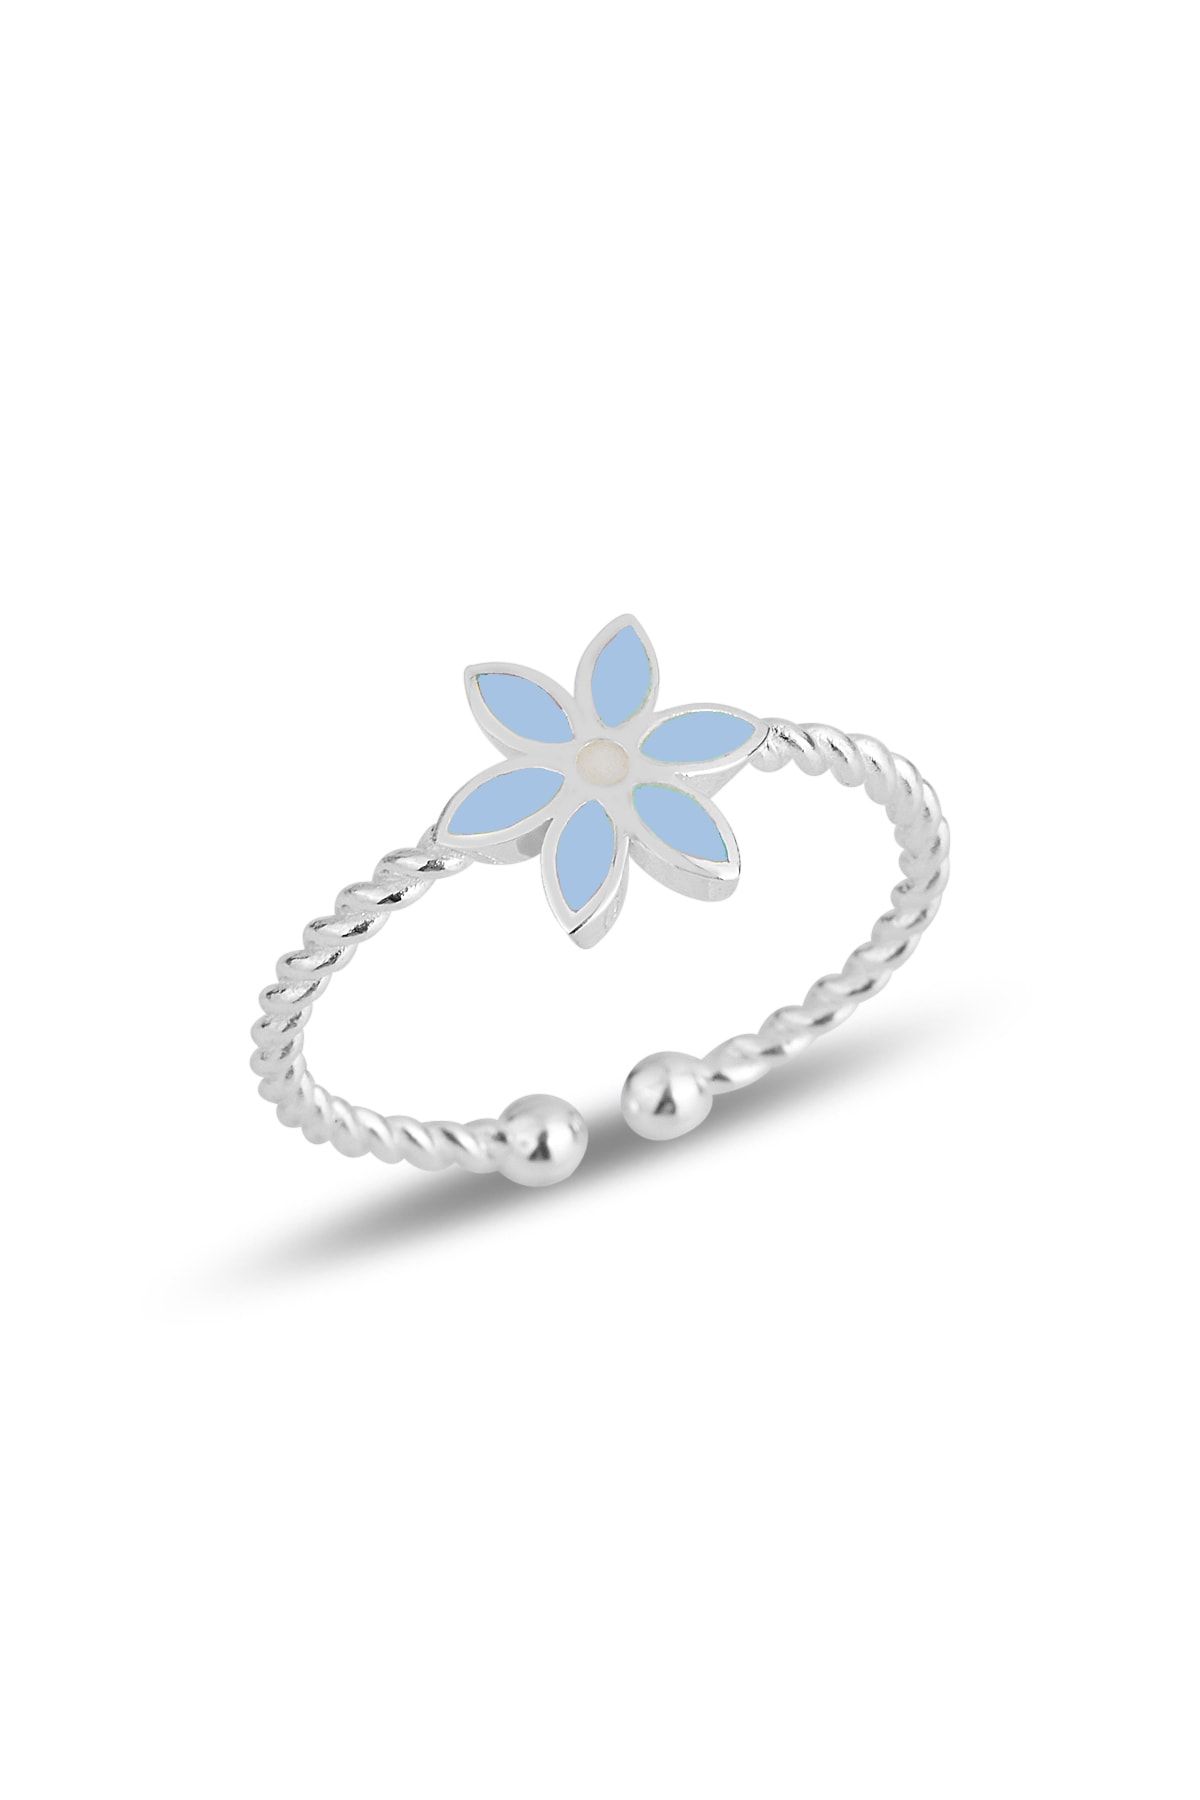 Söğütlü Silver Gümüş Mavi Mineli Çiçek Ayarlamalı Çocuk Yüzüğü